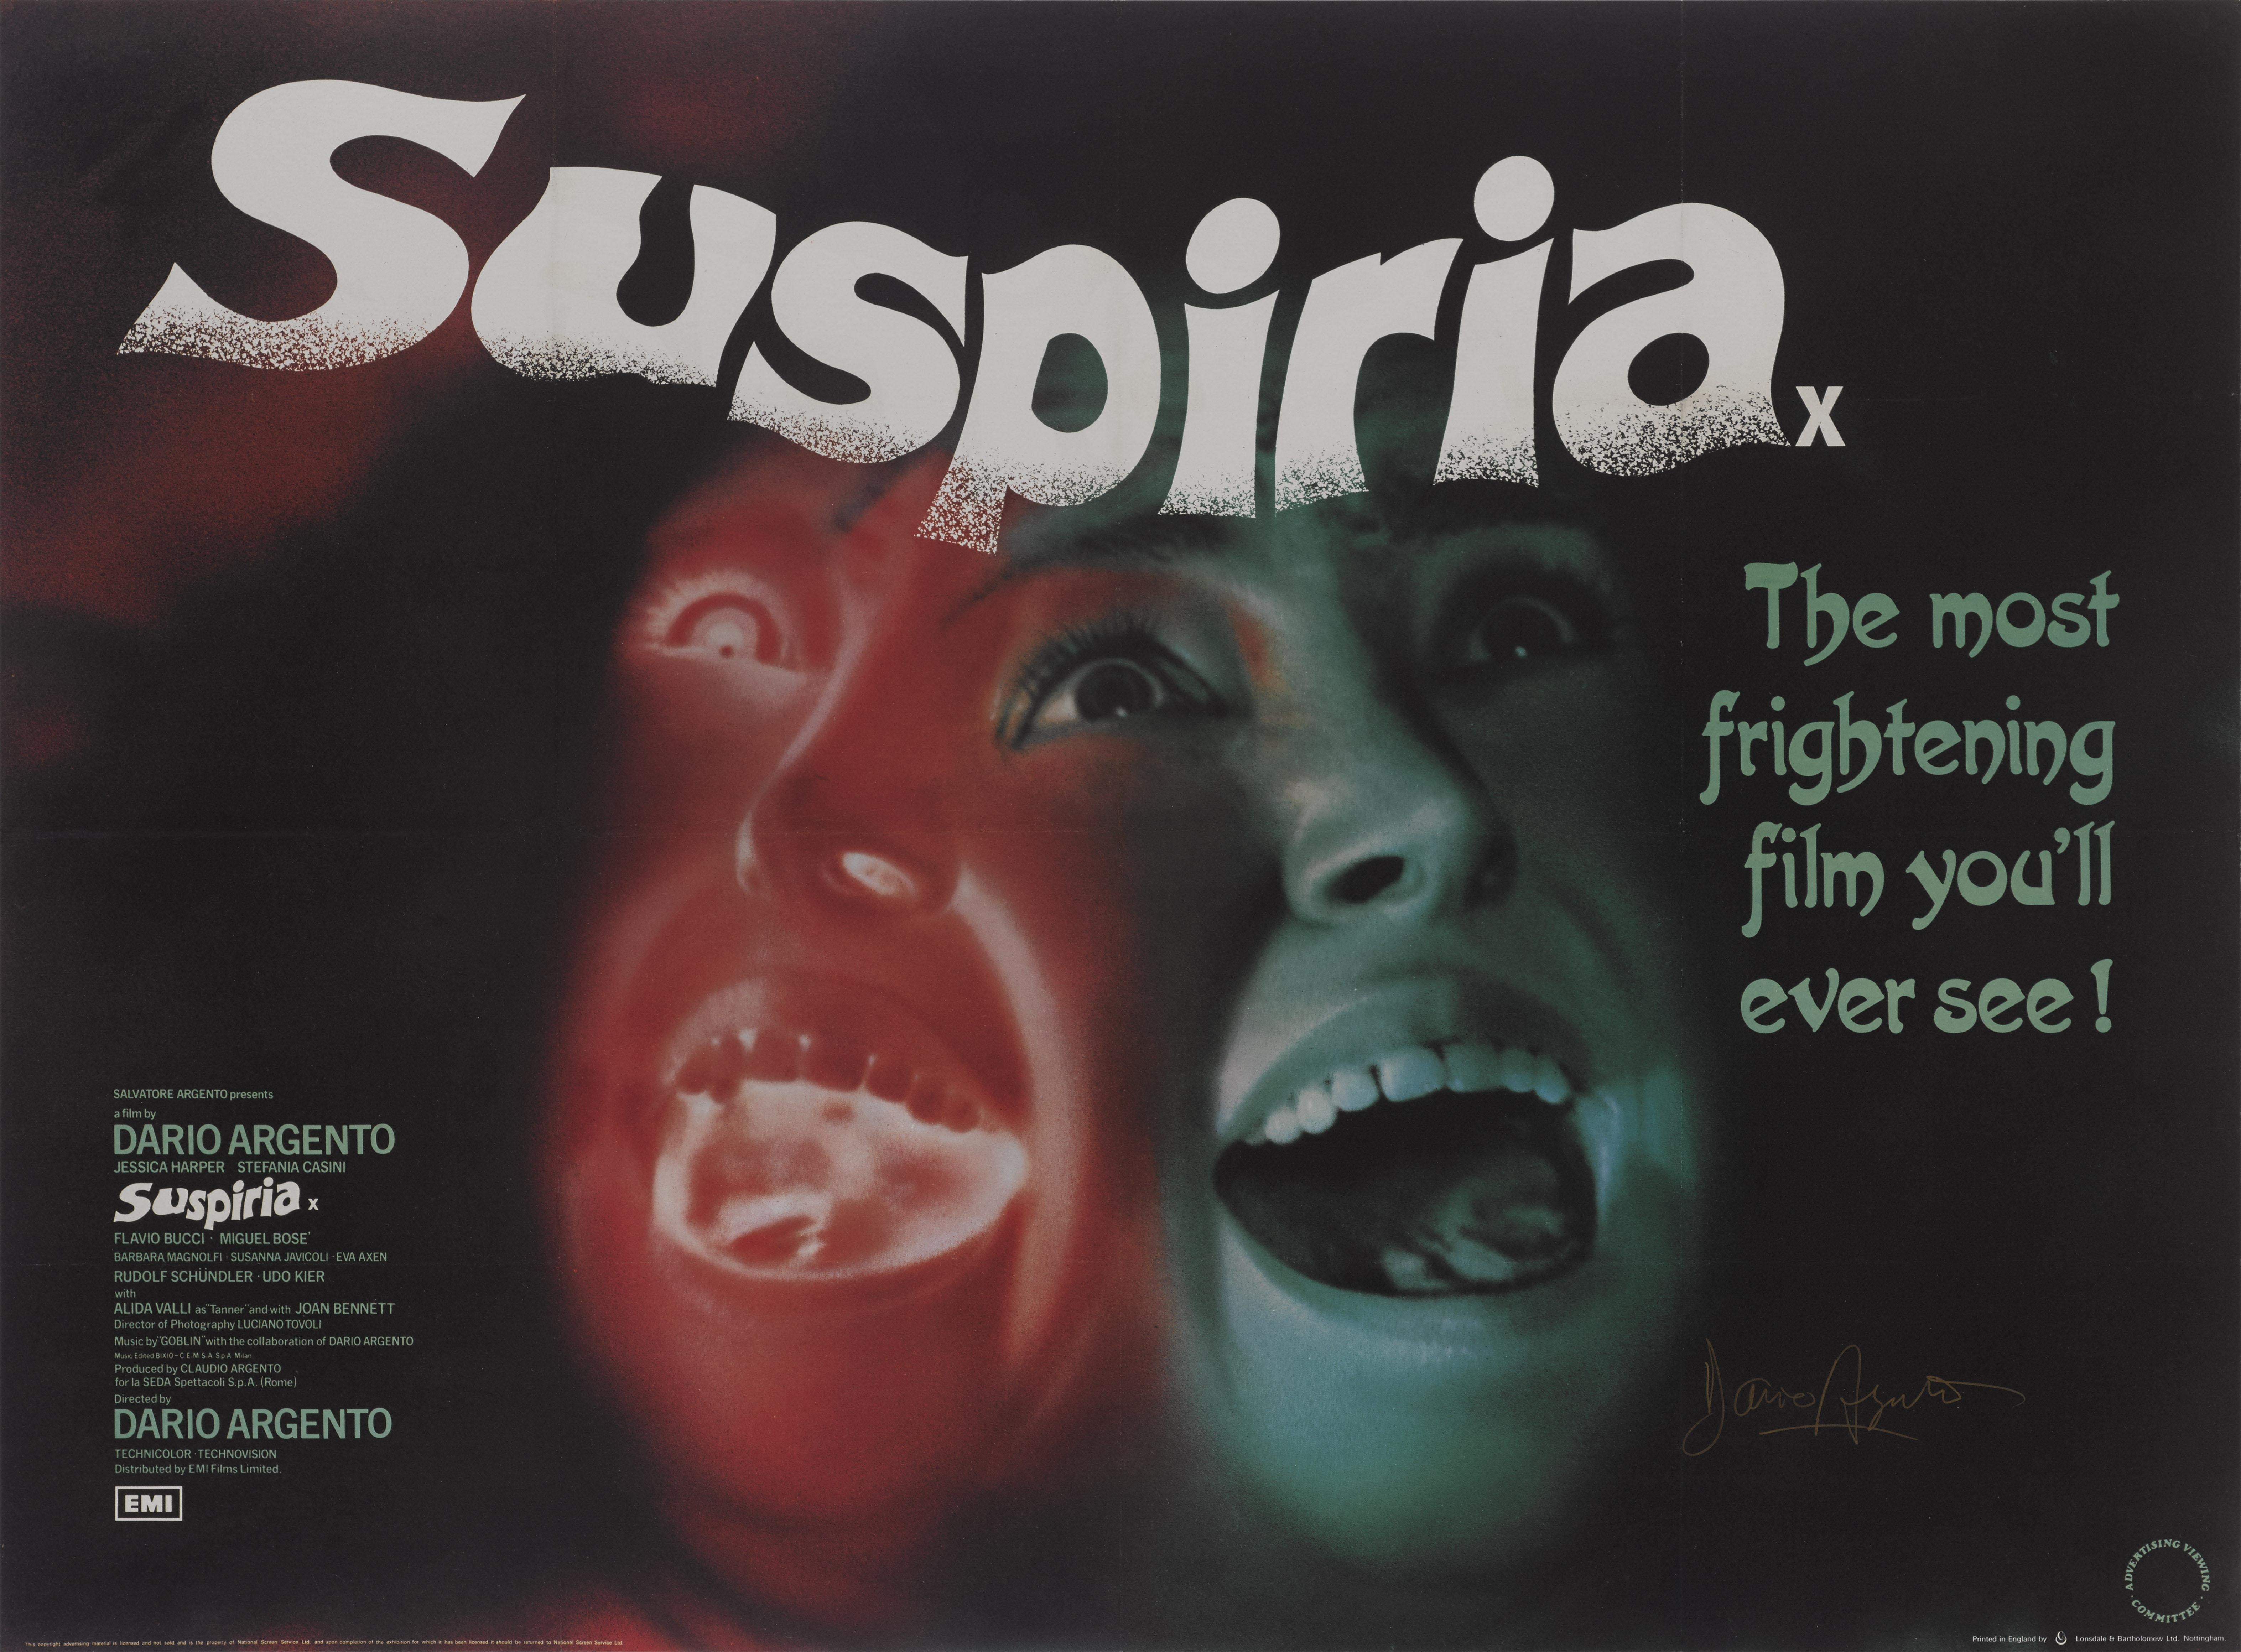 Originales britisches Filmplakat für den Horrorfilm von 1977, bei dem Dario Argento Regie führte und der von Argento und Daria Nicolodi geschrieben wurde. In dem Film spielen Jessica Harper, Stefania Casini und Flavio Bucci mit. Nach einer Reihe von